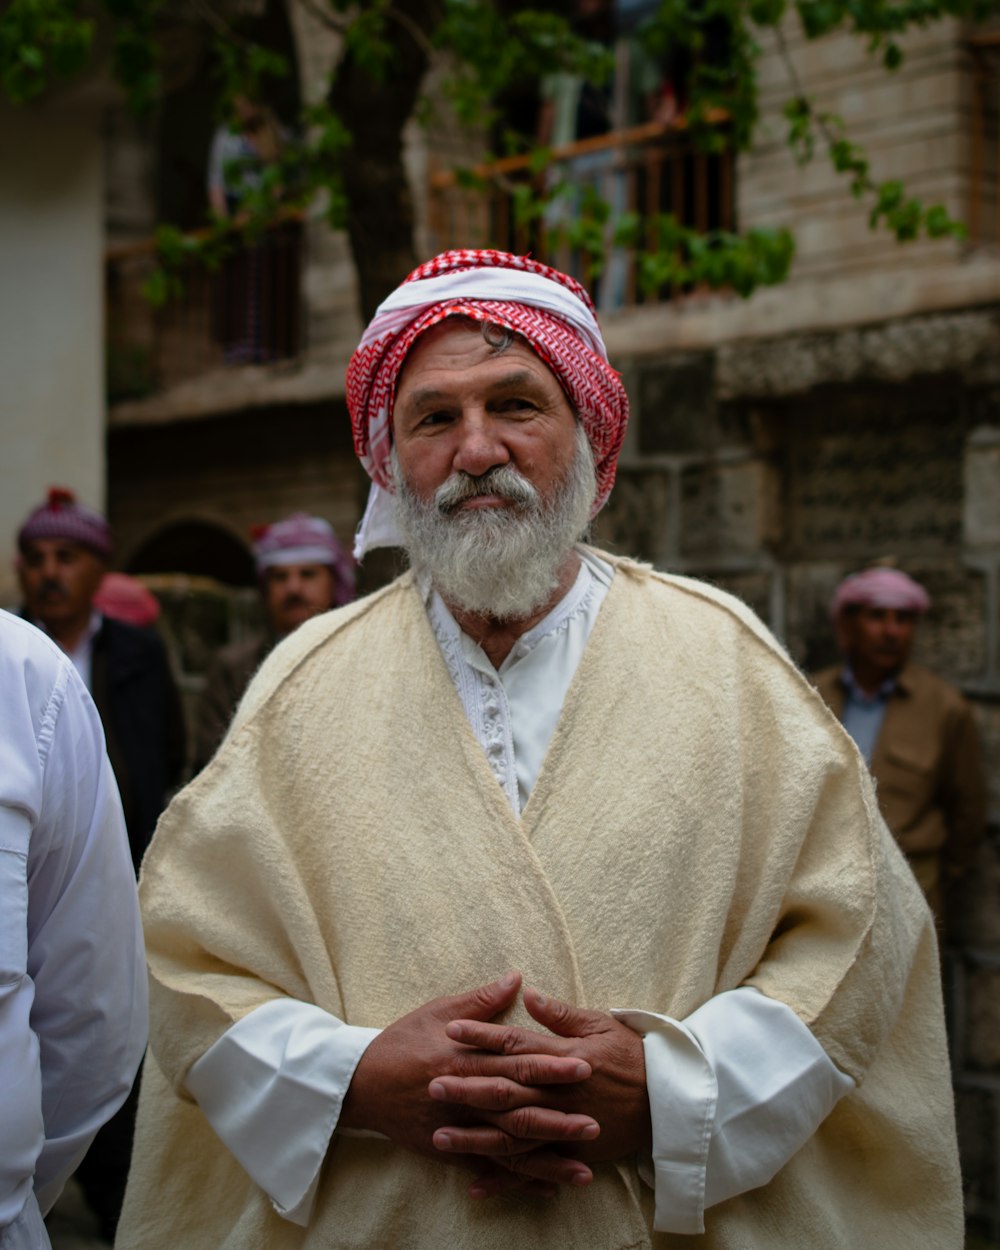 Un homme à la barbe blanche portant un turban rouge et blanc